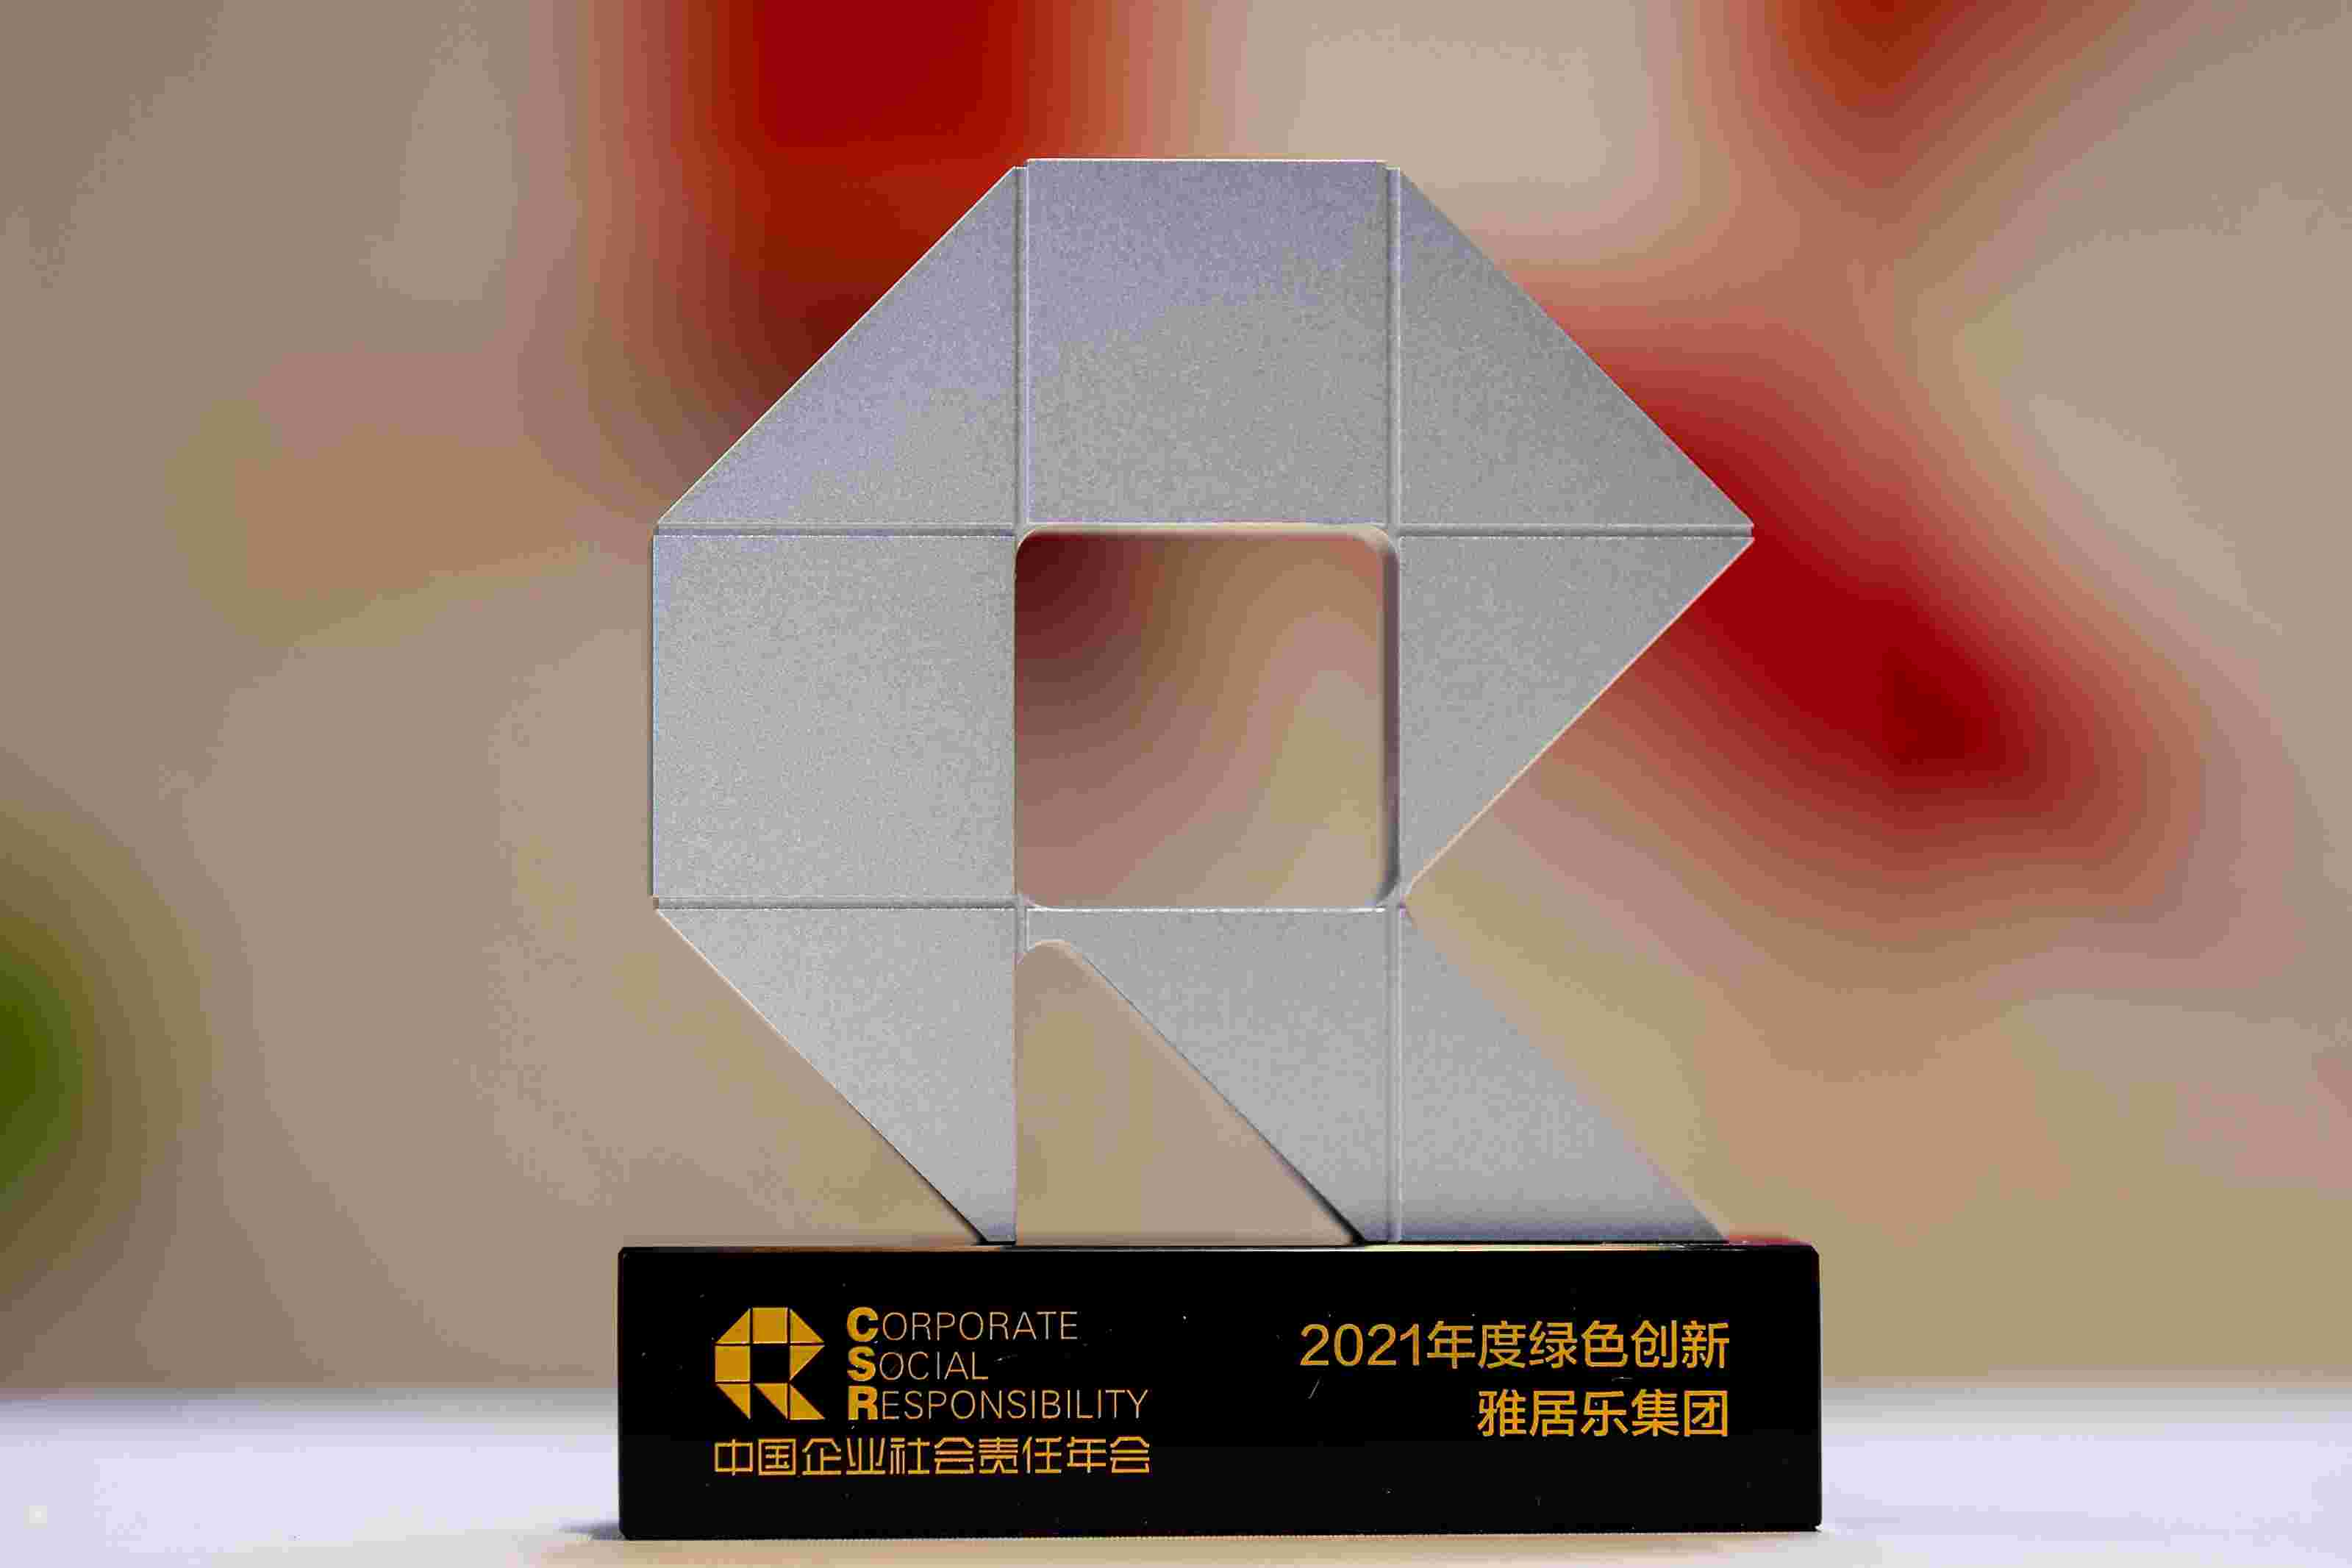 雅居乐集团荣膺中国企业社会责任年会“2021年度绿色创新”奖项